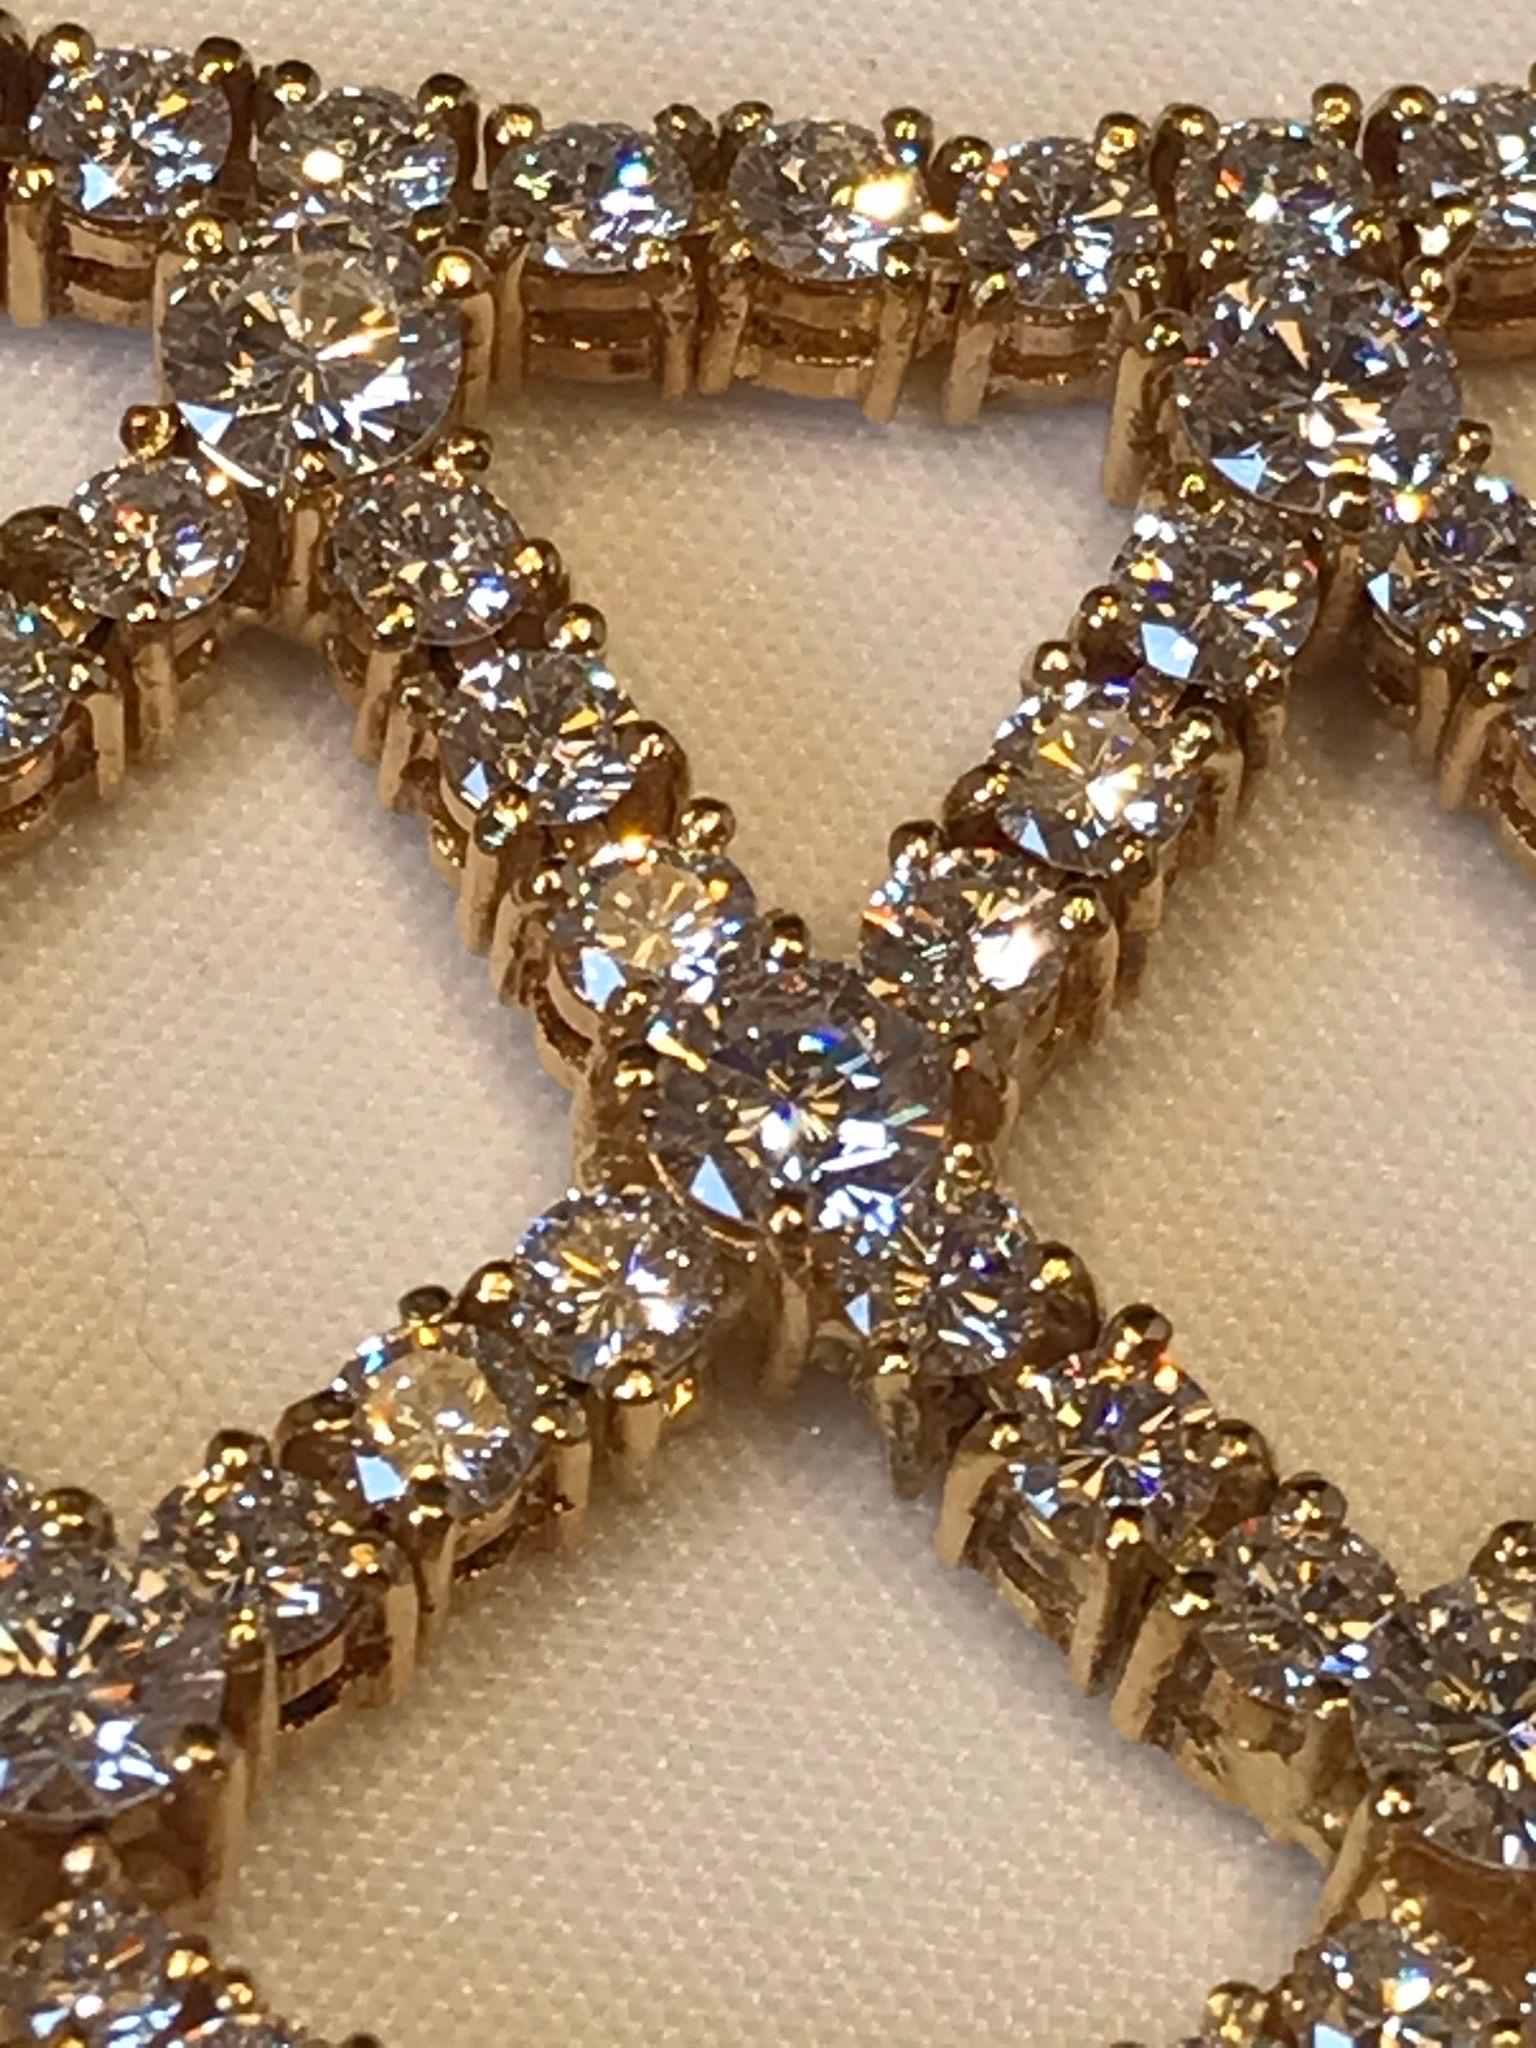 collier en or jaune 18KT et diamants.

Superbe collier en or jaune 18KT et 51,45 ct. de diamants taille brillant. Ce collier, au design irrégulier, rappelle la précieuse dentelle vénitienne des années 1400 qui ornait les vêtements et les capes des